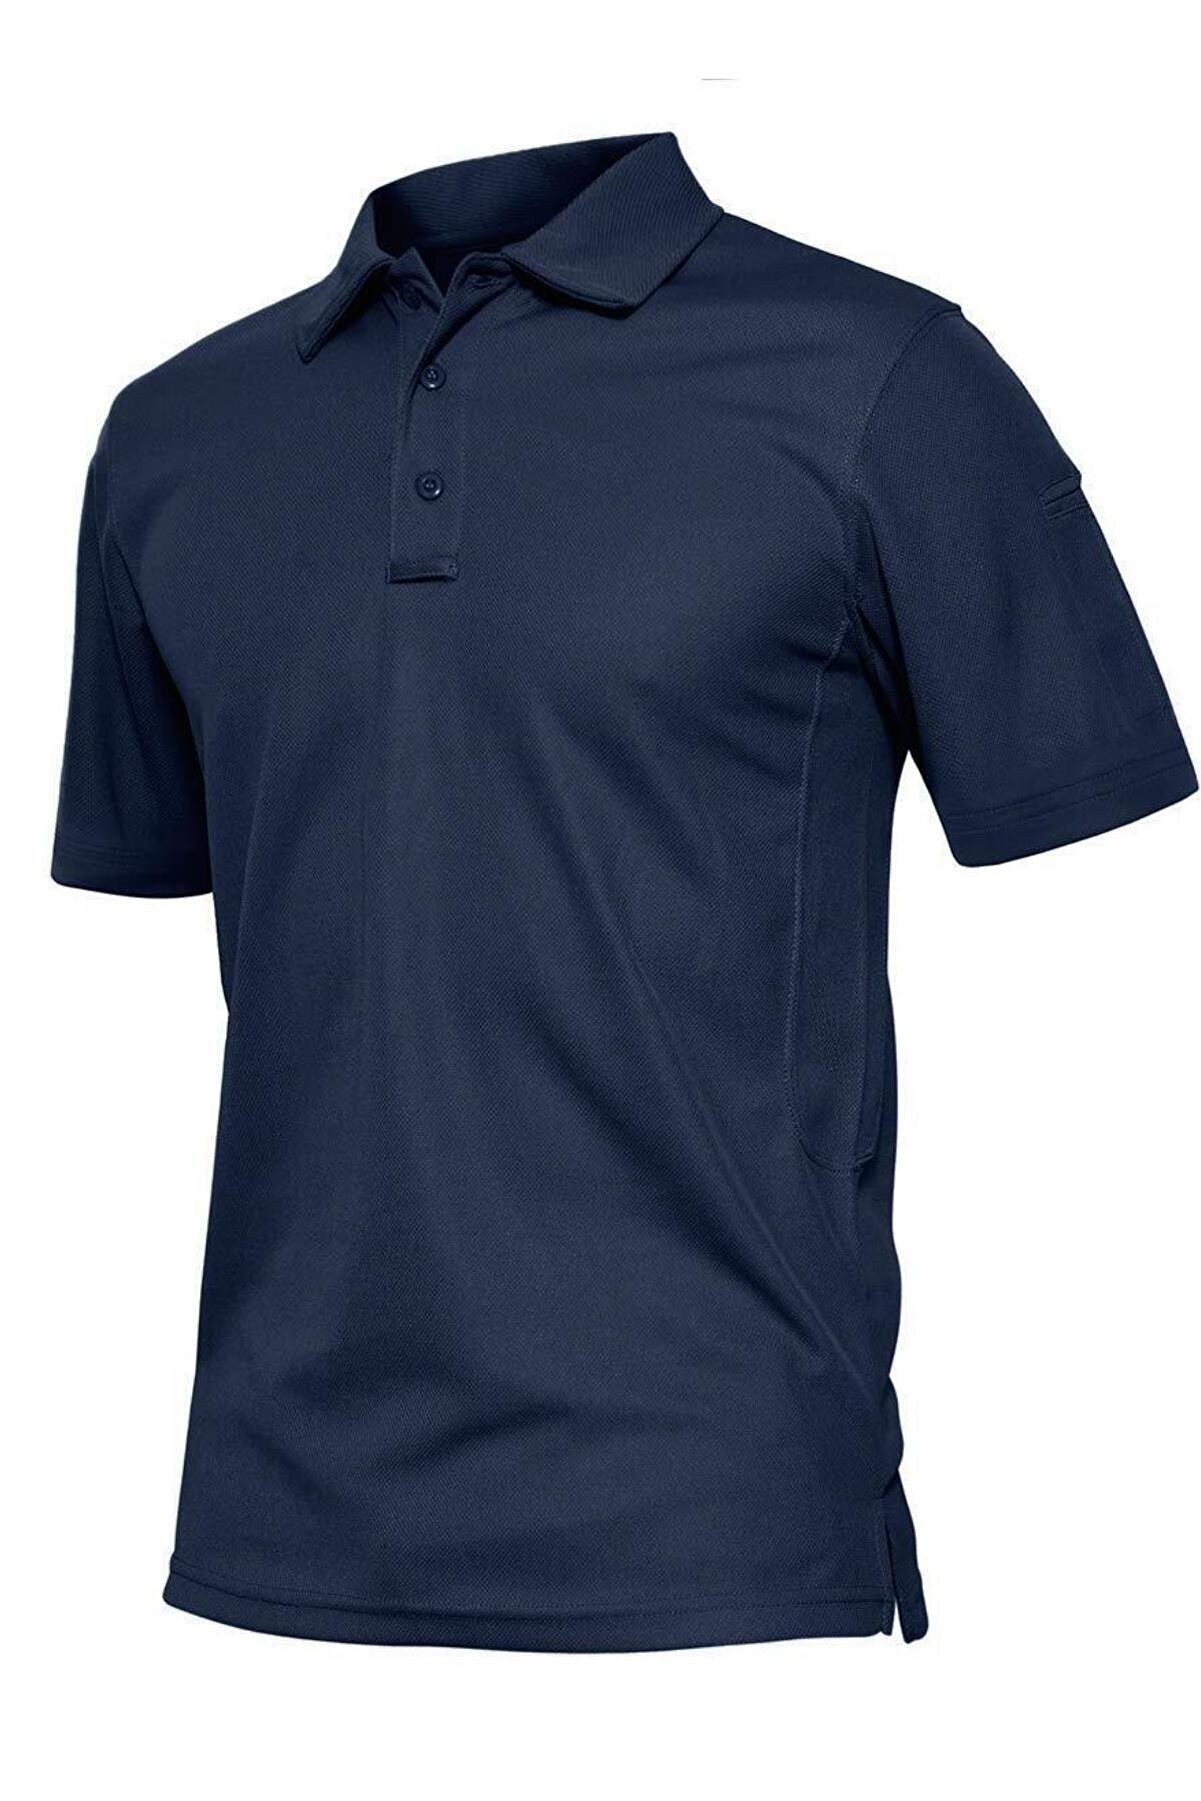 Ghassy Co. Erkek Taktik Polo Yaka Gömlek Hızlı Kuruma Nem Emici Performans Pique Jersey Golf T-shirt - Lacivert